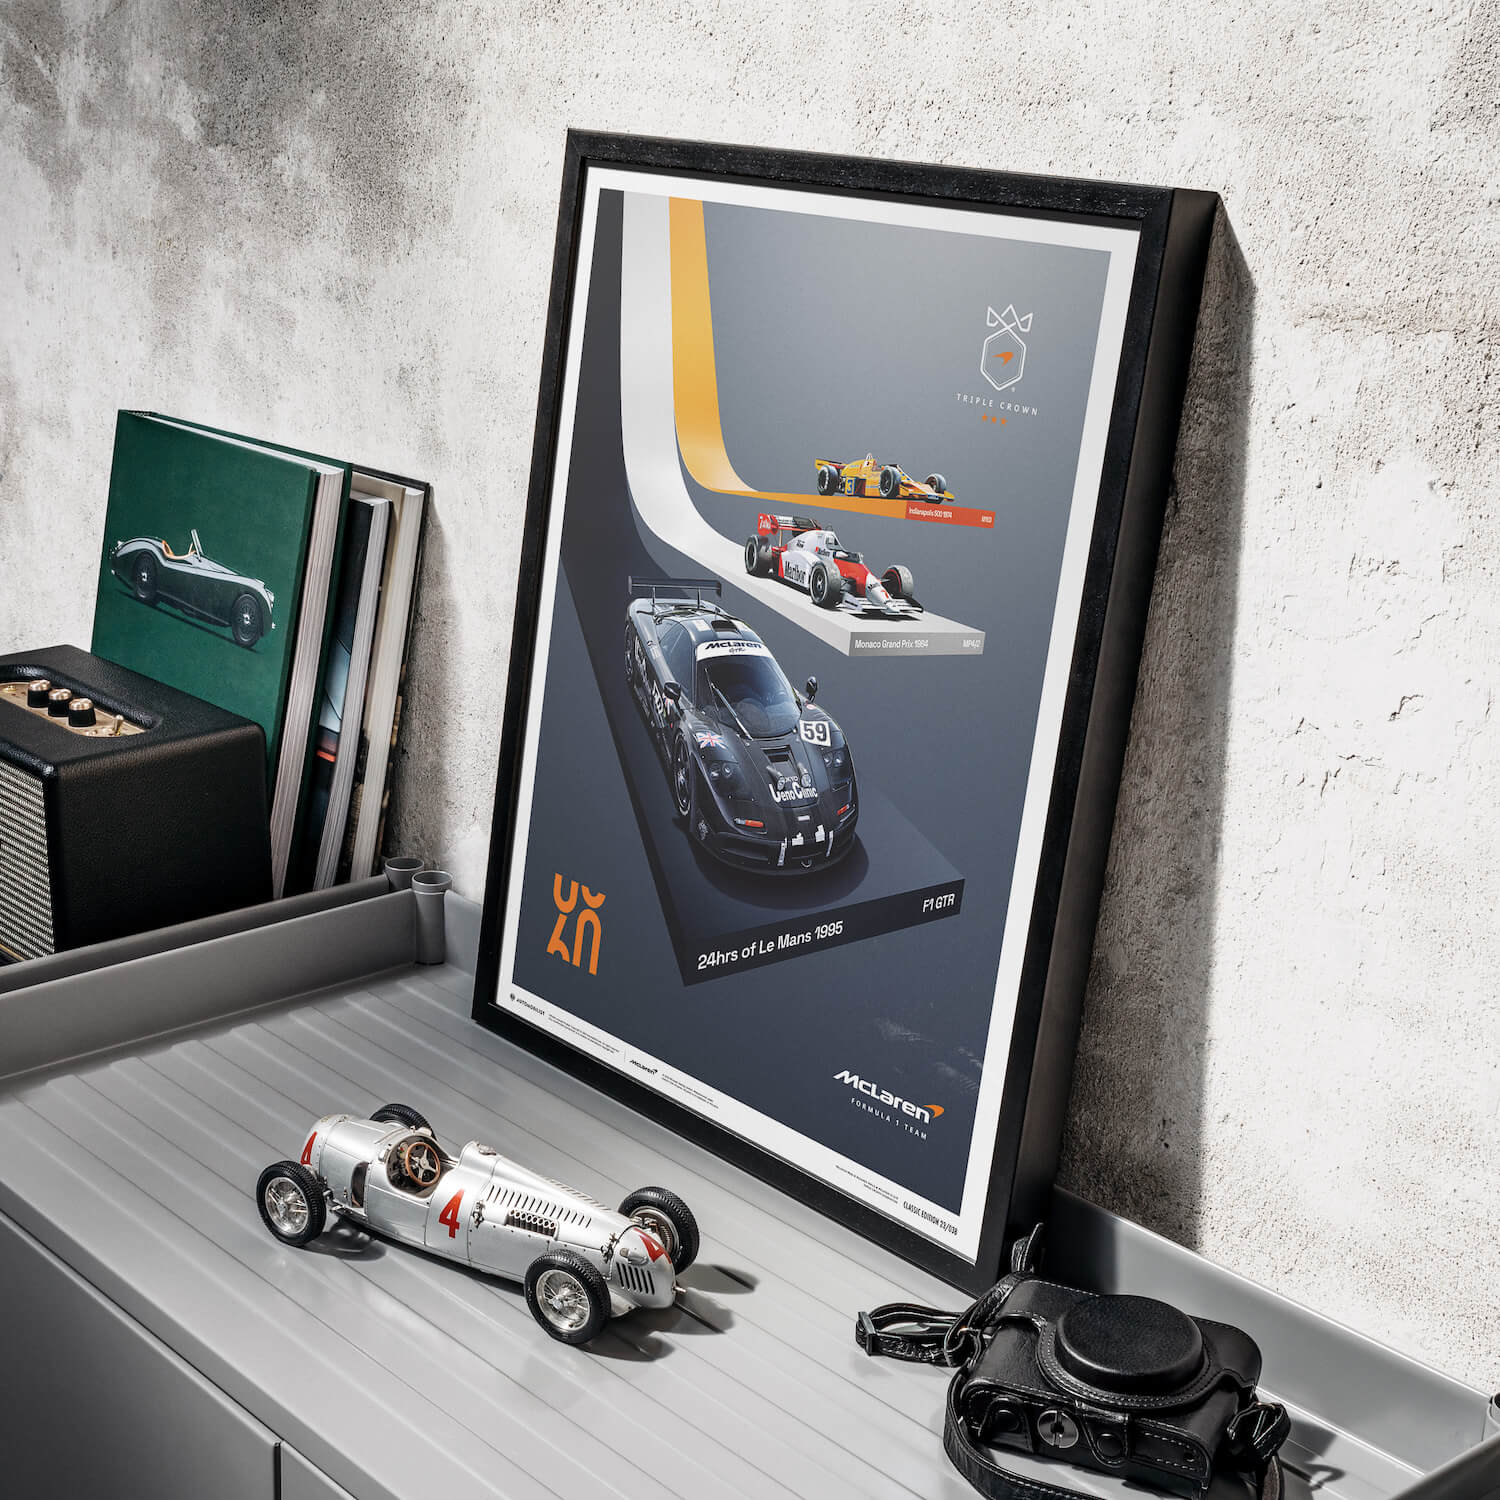 McLaren Racing - La Triple Couronne - 60e anniversaire